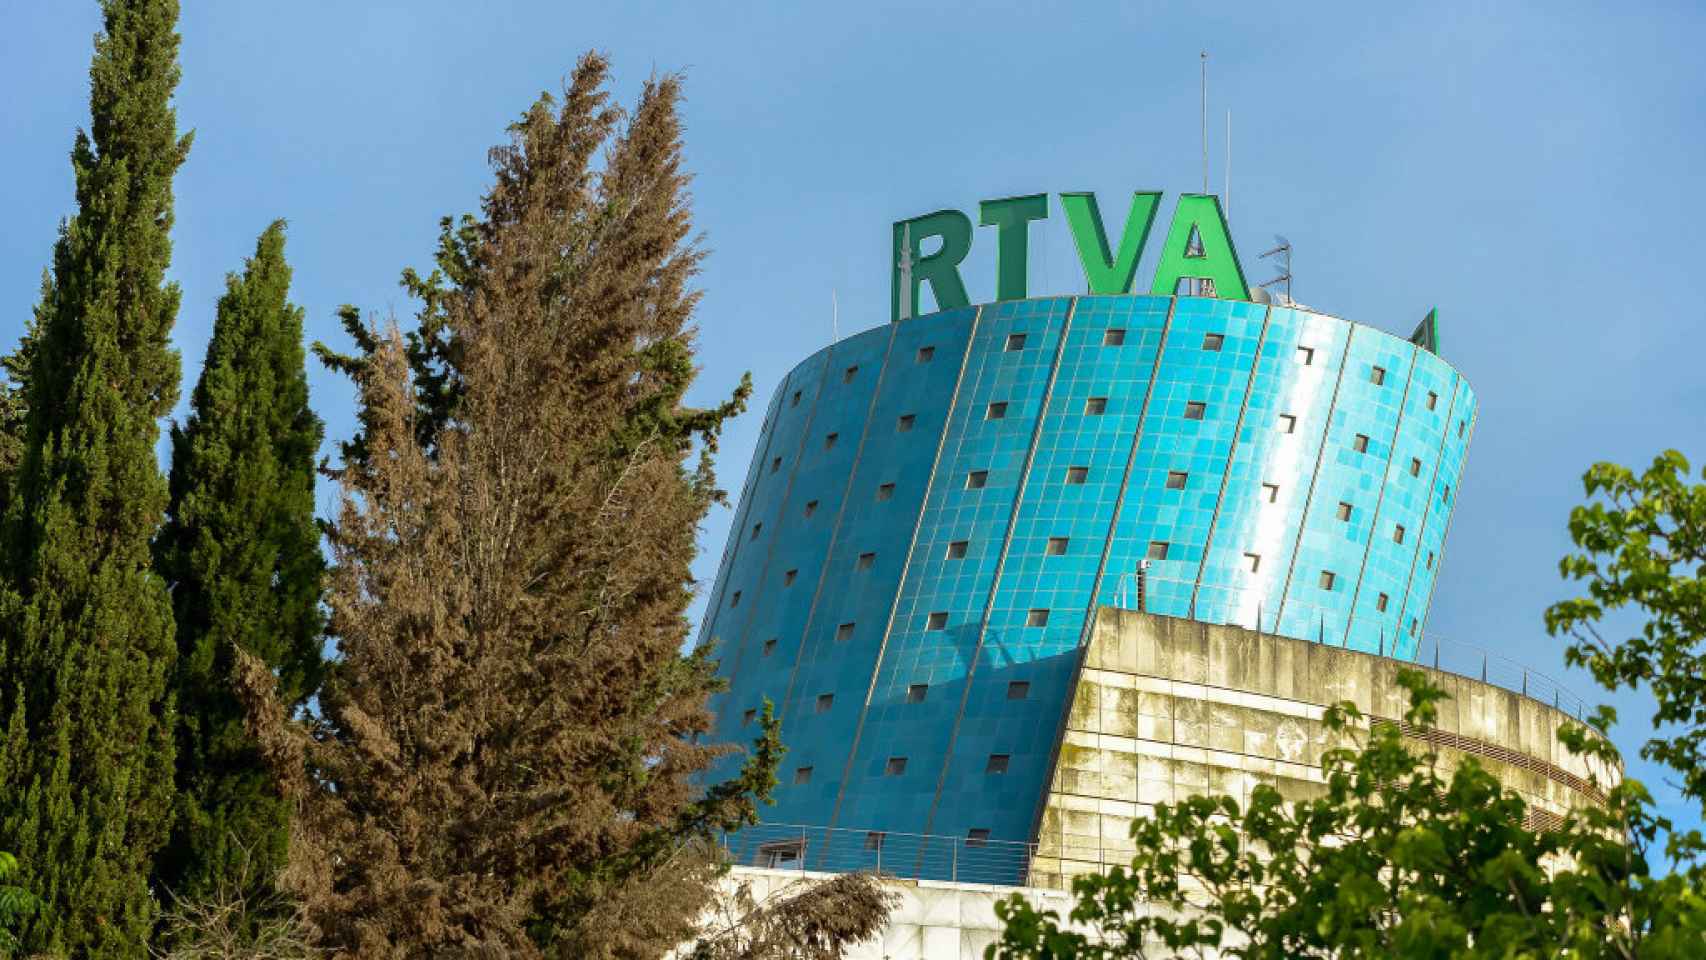 Sede de la Radio y Televisión de Andalucía (RTVA).